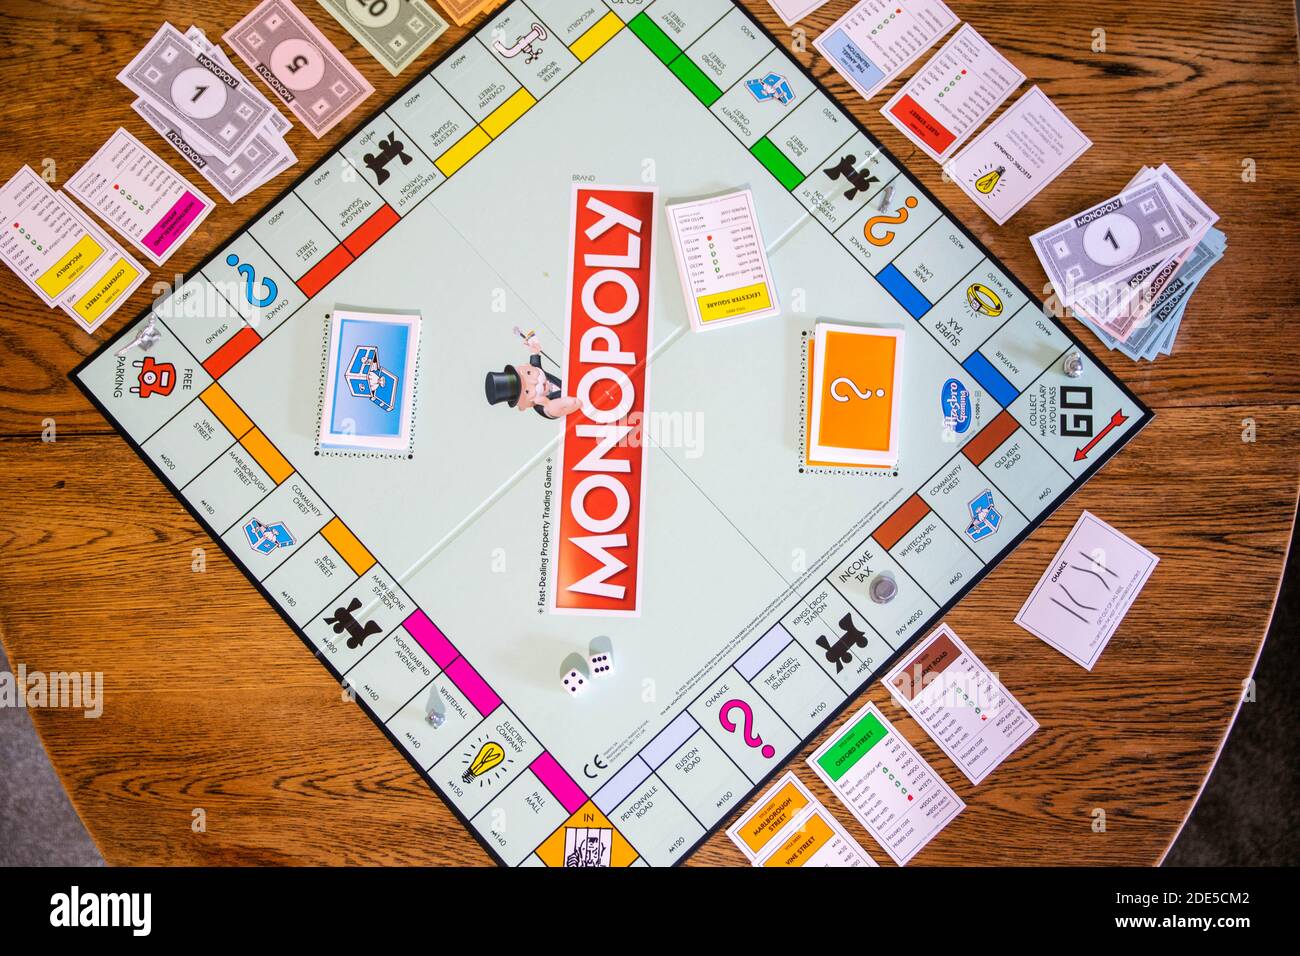 Durham, Großbritannien - 5. April 2020: Monopoly ist das klassische, schnell handelnde Brettspiel für Immobilien (Hasbro-Spiele). Finanz-, Banken-, Kauf von Immobilien, erste Stockfoto